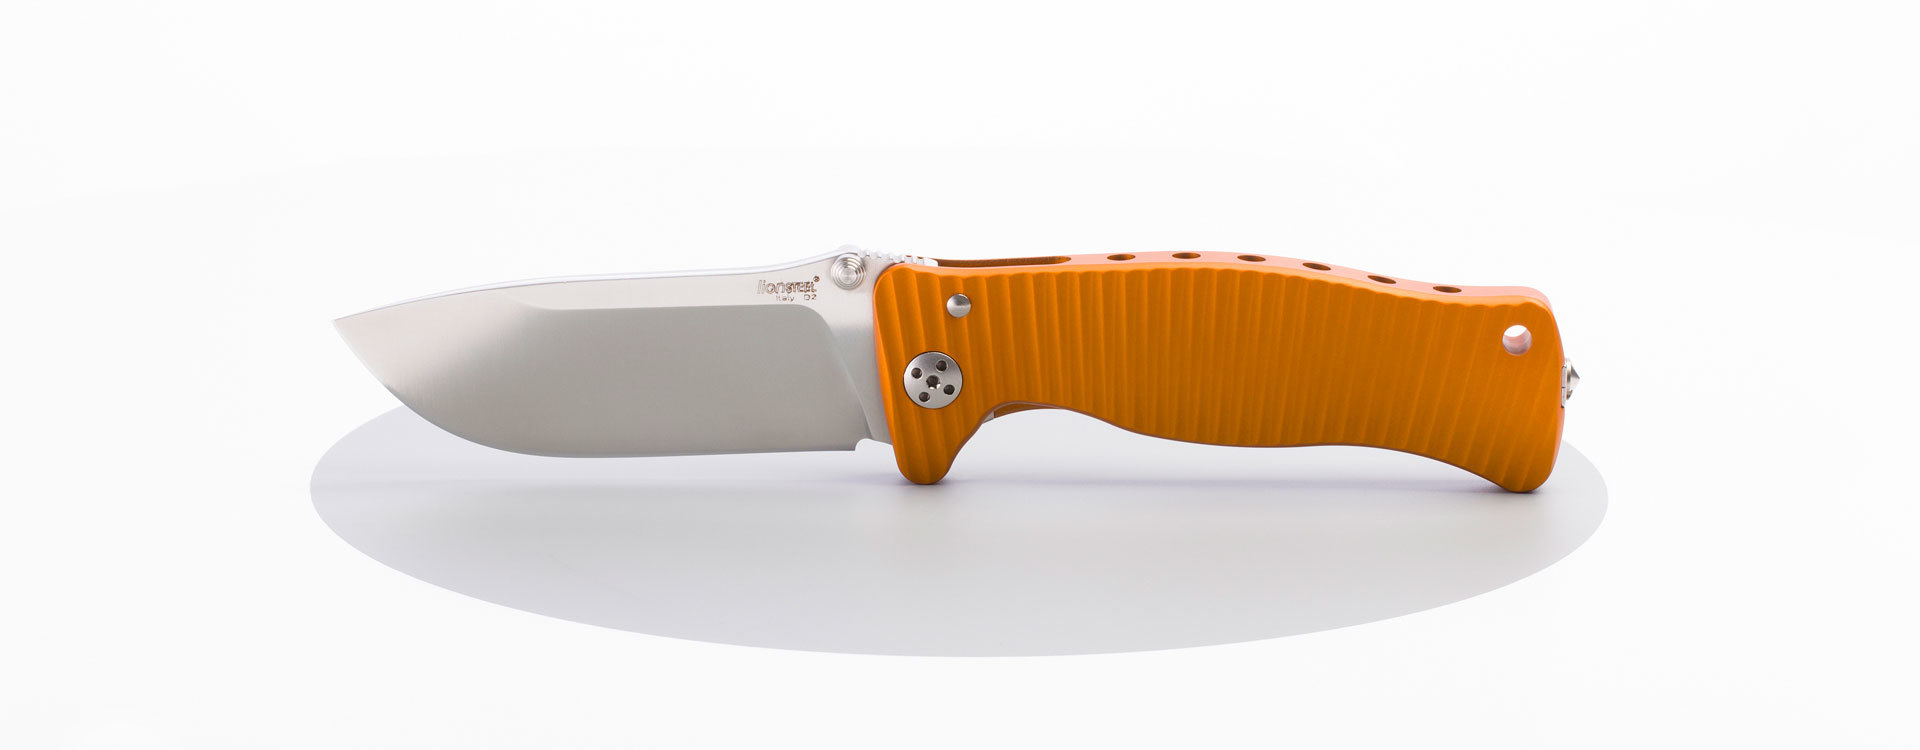 Нож складной LionSteel SR1A OS ORANGE, сталь D2 Satin Finish, рукоять алюминий (Solid®), оранжевый - фото 3